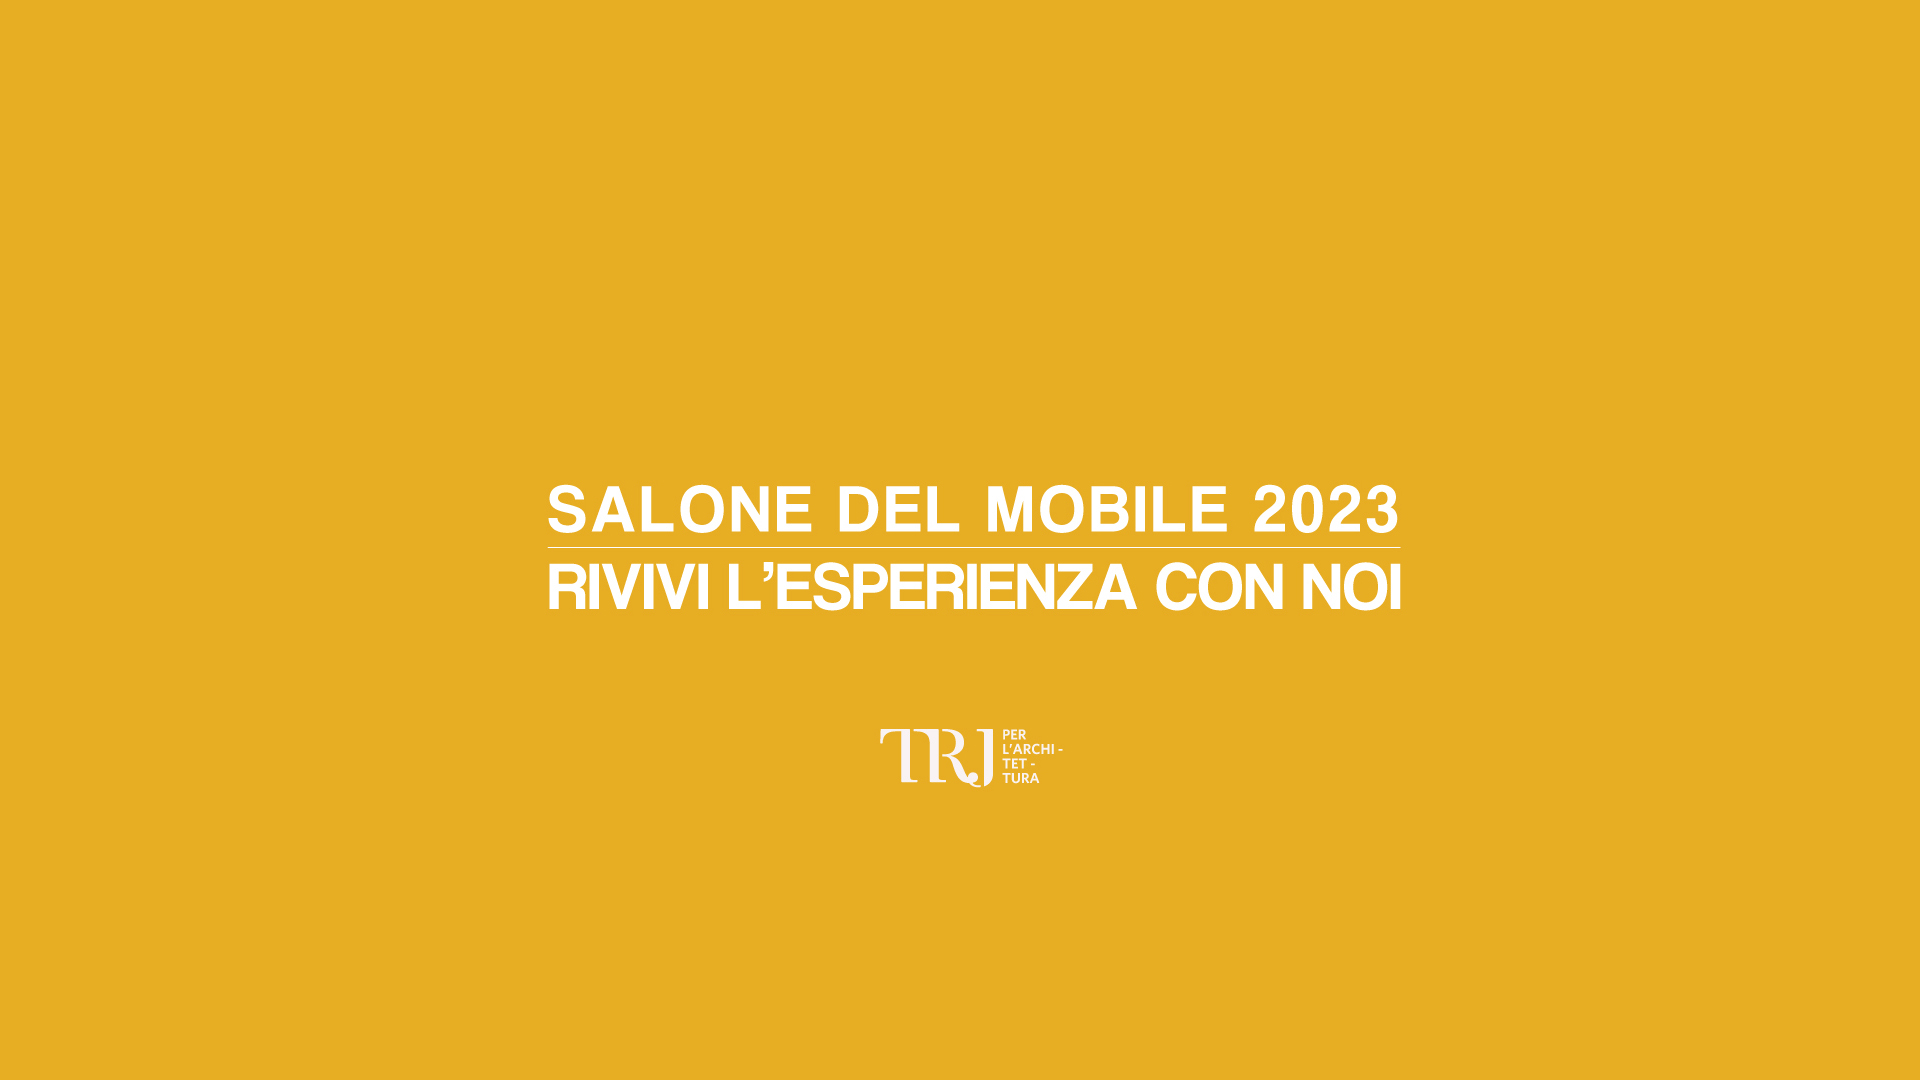 TRJ_Salone del Mobile_2023